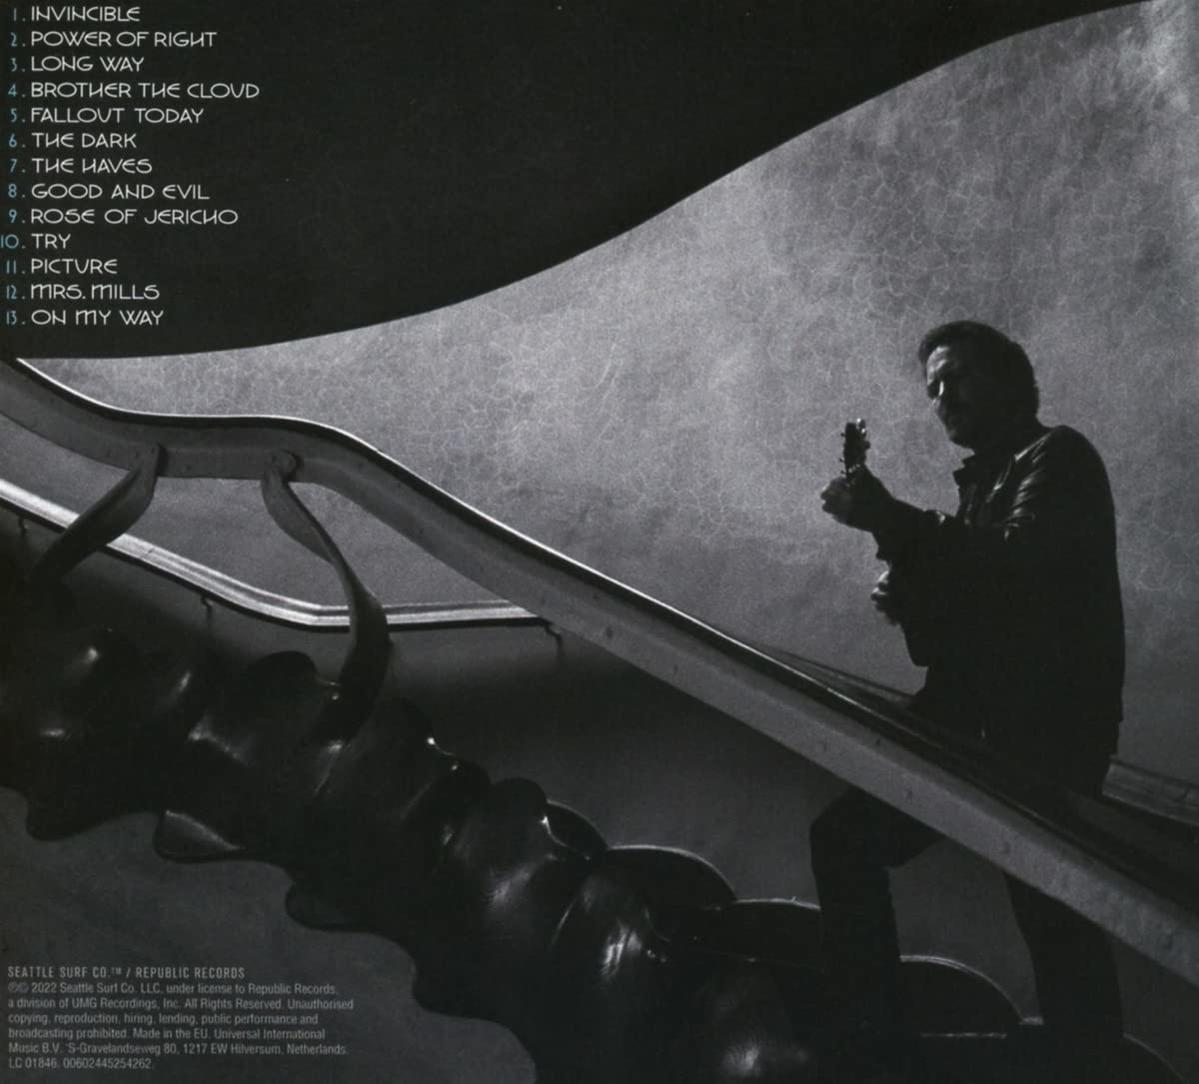 Eddie Vedder Earthling - - (CD)